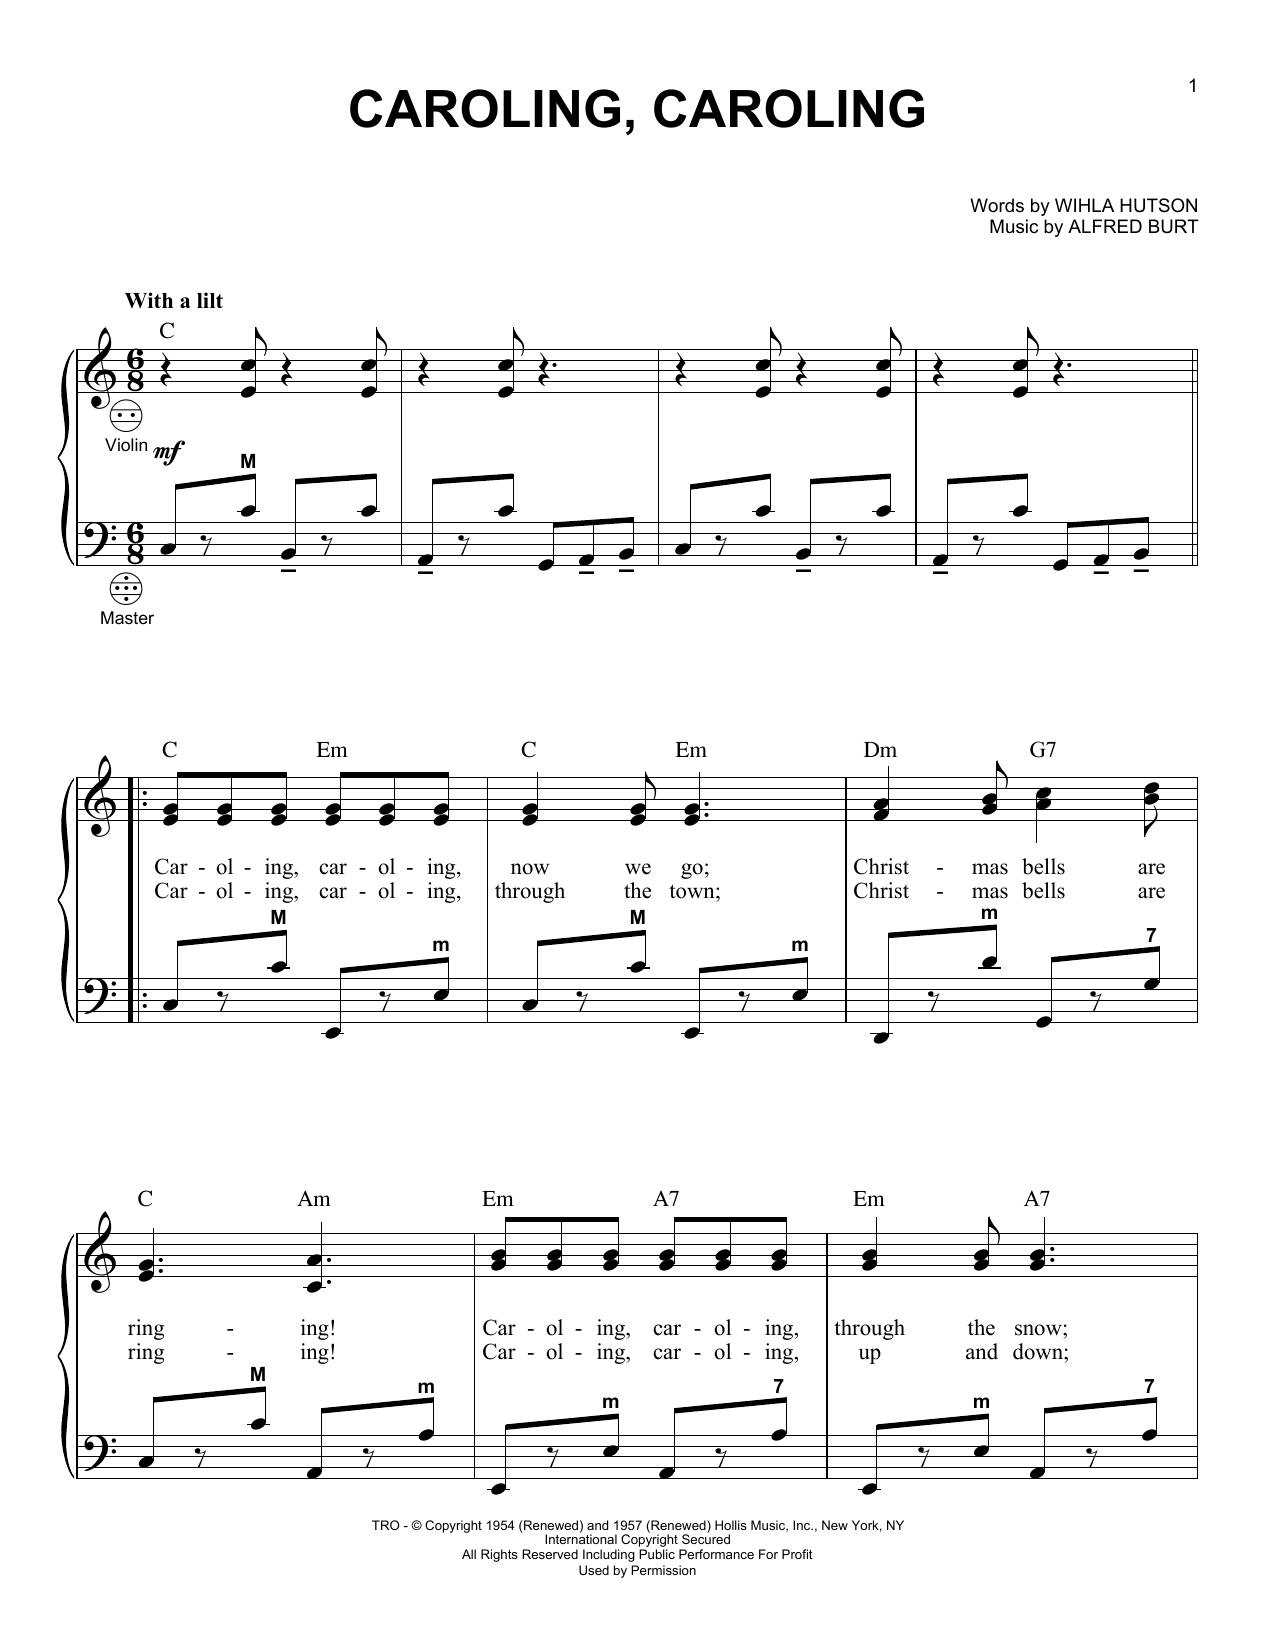 Alfred Burt Caroling, Caroling Sheet Music Notes & Chords for Accordion - Download or Print PDF